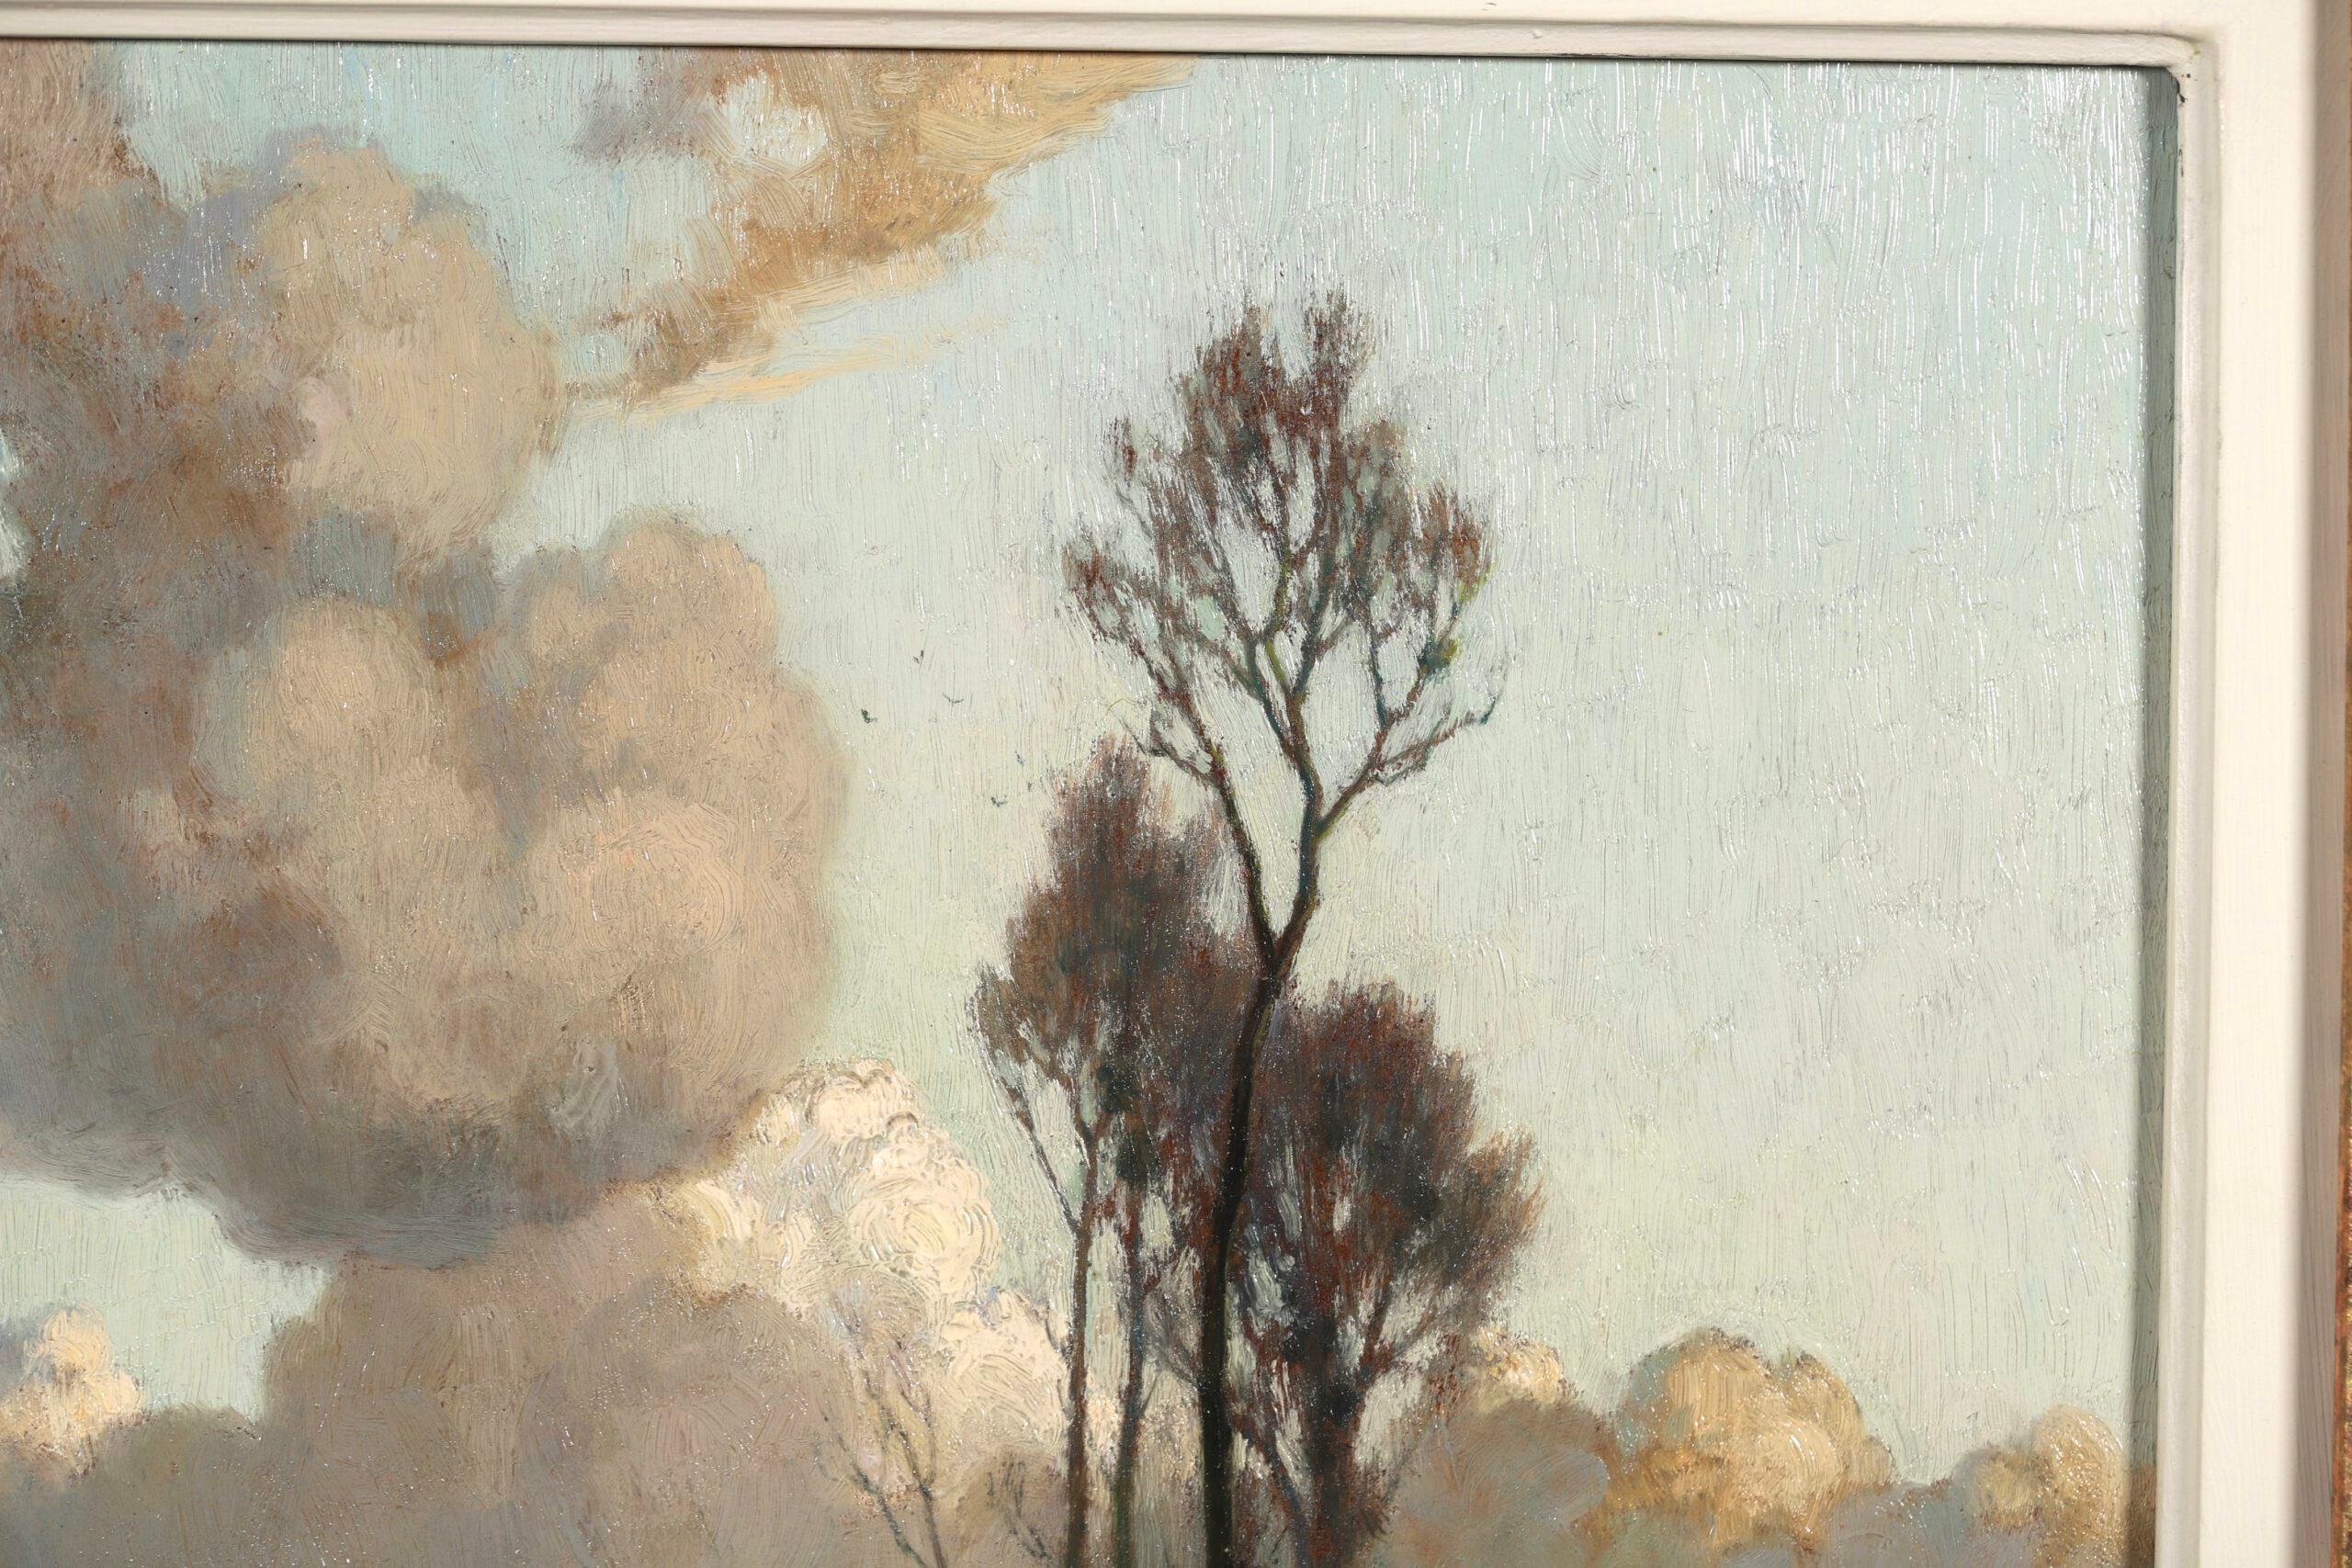 Paysage à l'huile sur toile signé, datant de 1940, du célèbre peintre impressionniste français Alexandre Louis Jacob. L'œuvre représente un paysage automnal de marais au bord de la Seine en début de soirée.

Signature :
Signé en bas à